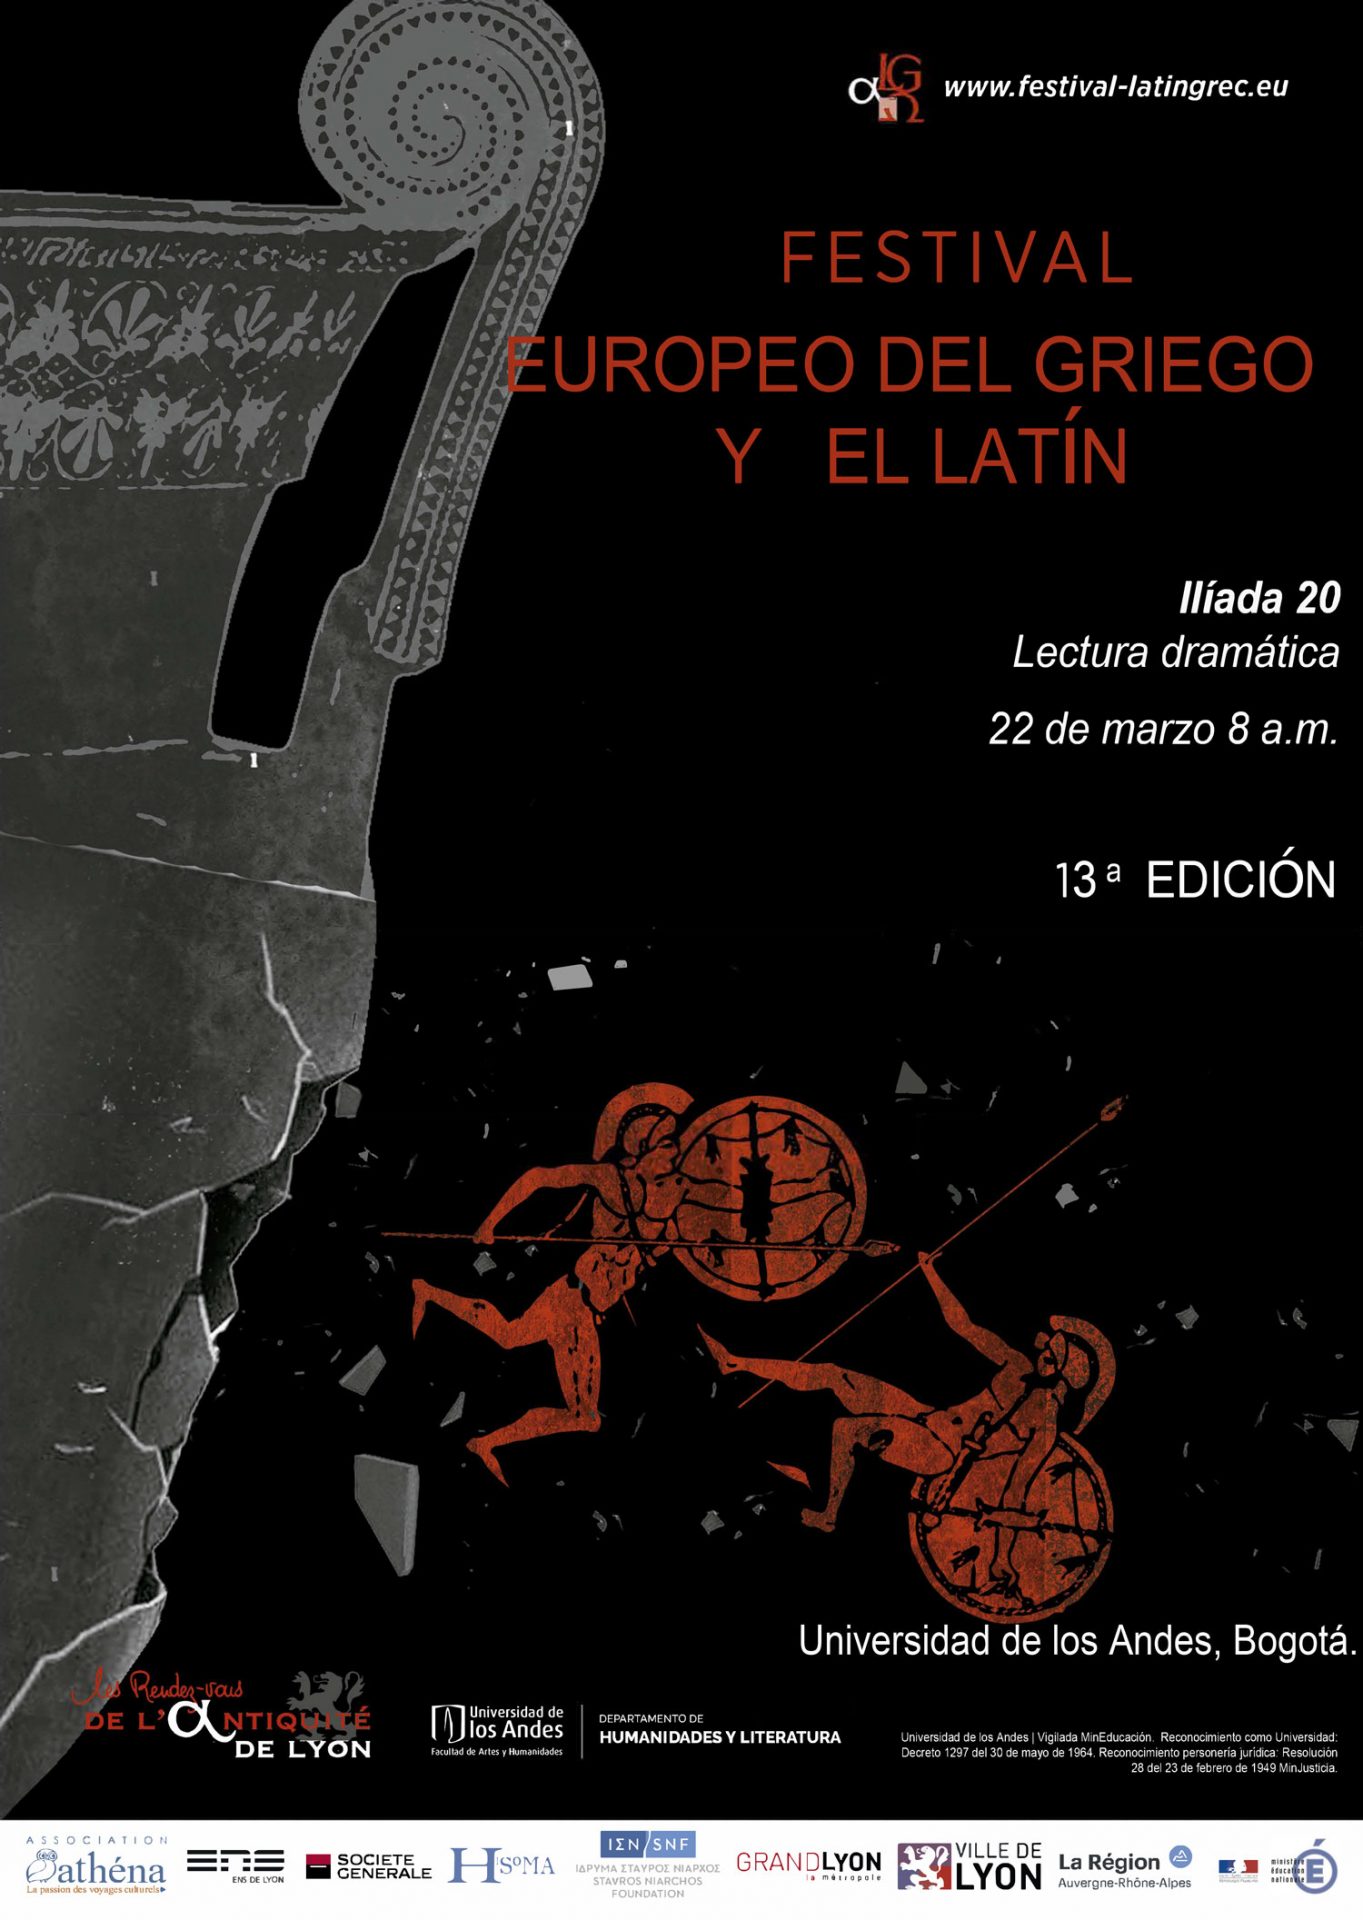 13ª edición del Festival Europeo del Griego y el Latín. Ilíada 20 - Lectura dramática.